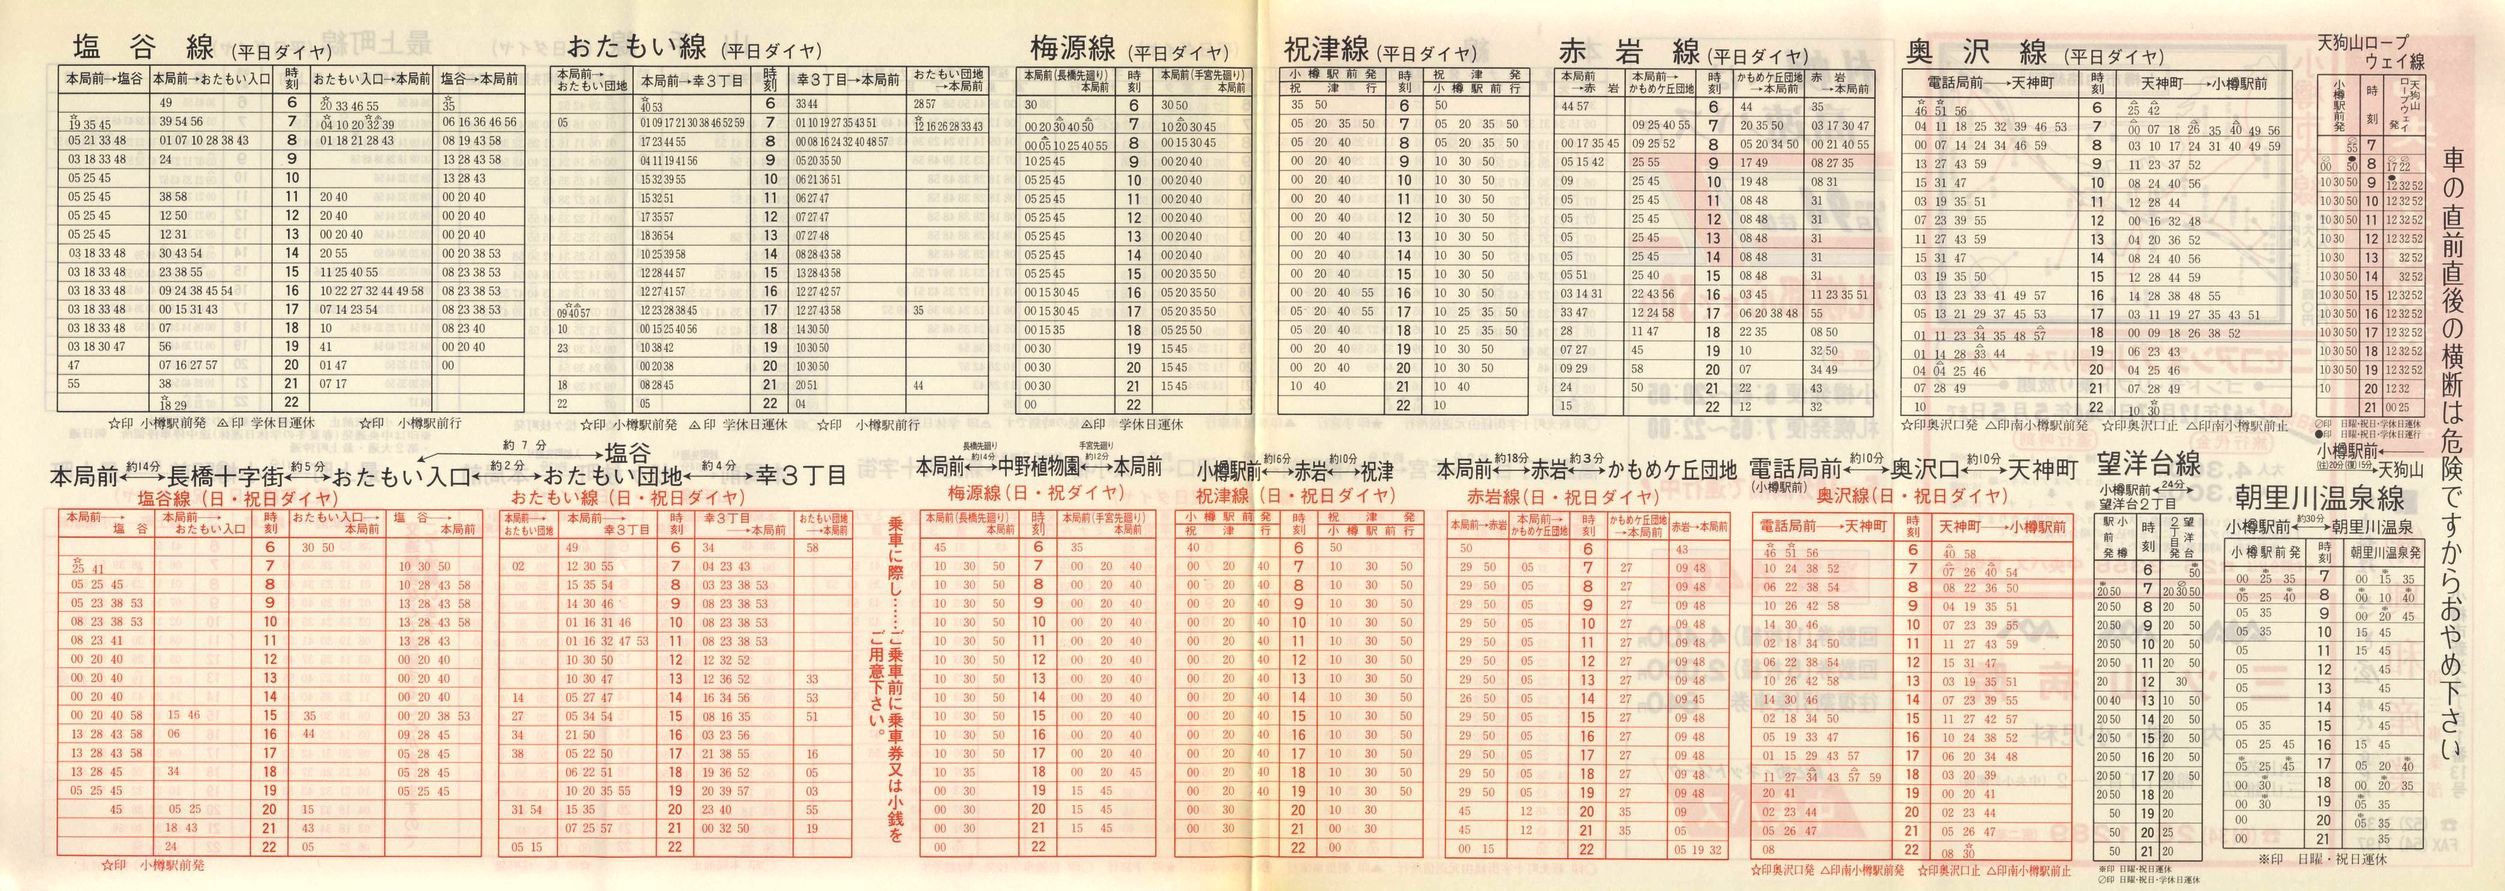 1988-12-01改正_北海道中央バス(小樽)_小樽市内線時刻表裏面